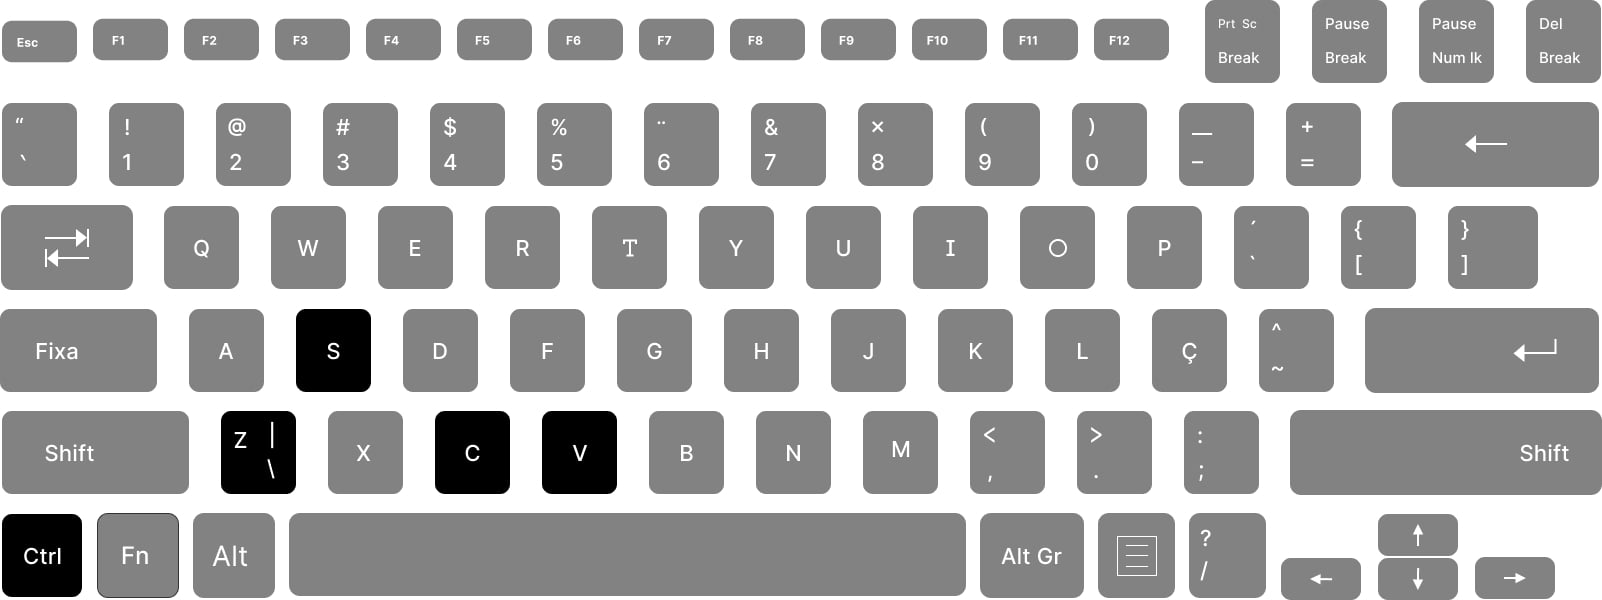 Teclado padrão com letras brancas, teclas cinzas e com destaque preto na teclas Control, Z, C, V e S.